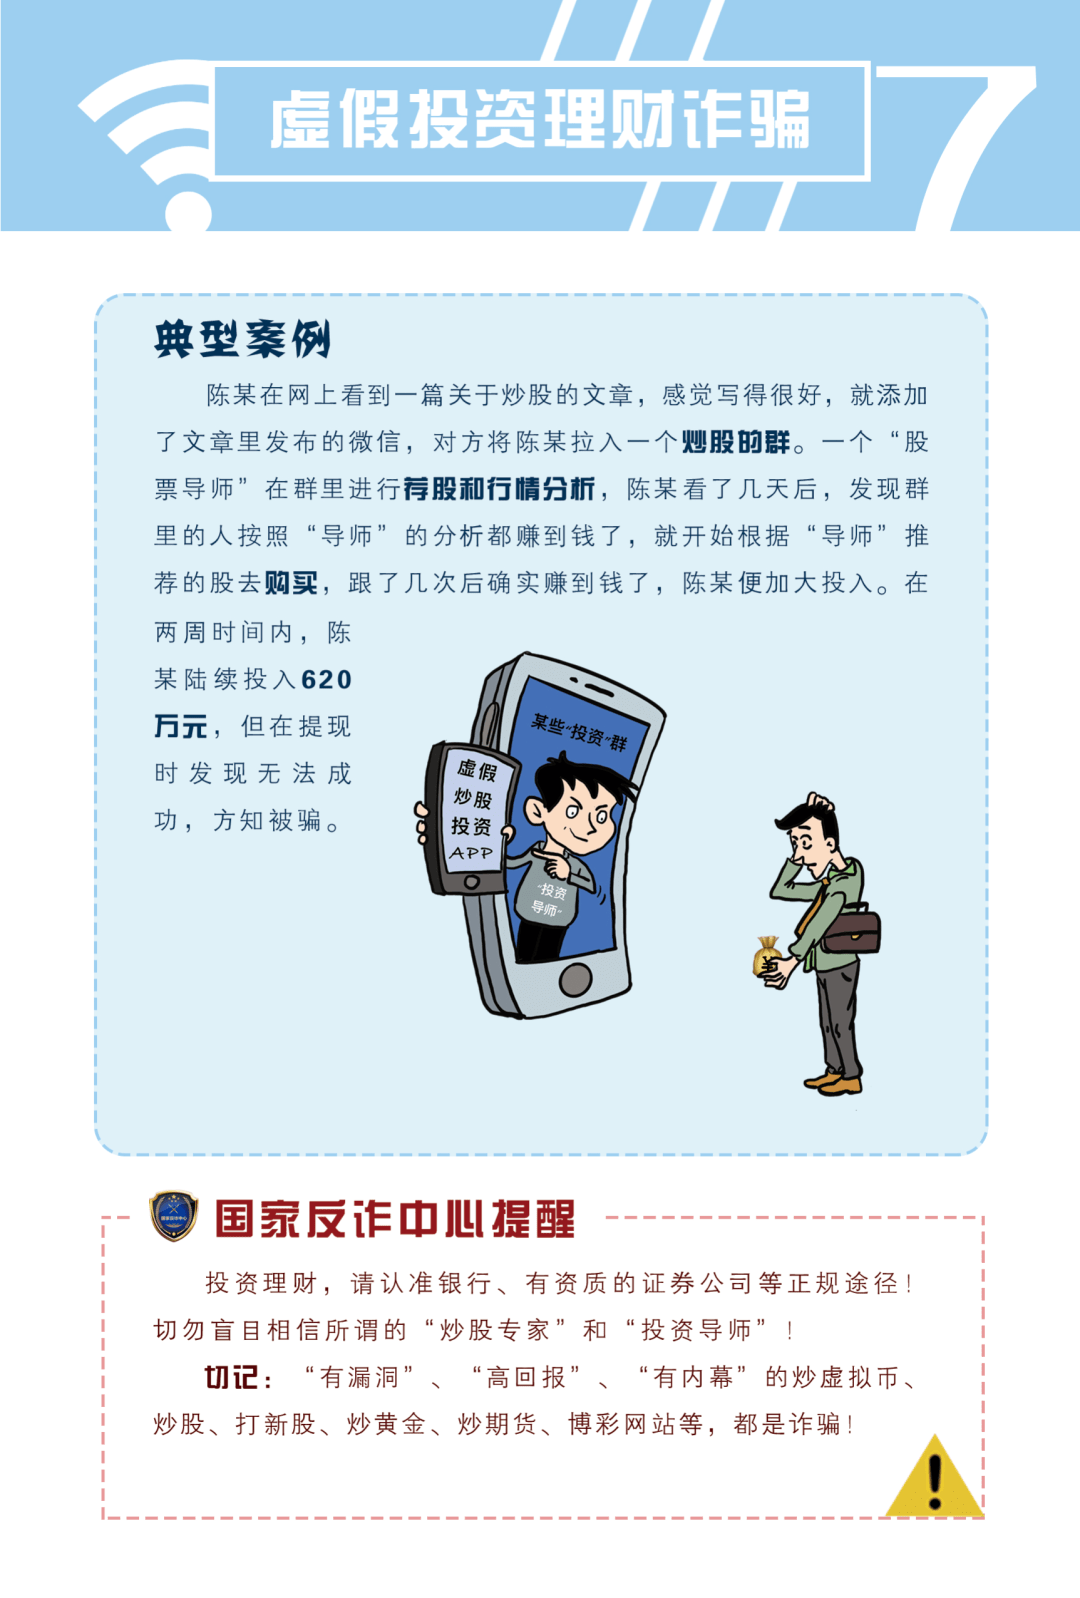 【预告通知】防范网络电信诈骗宣传手册